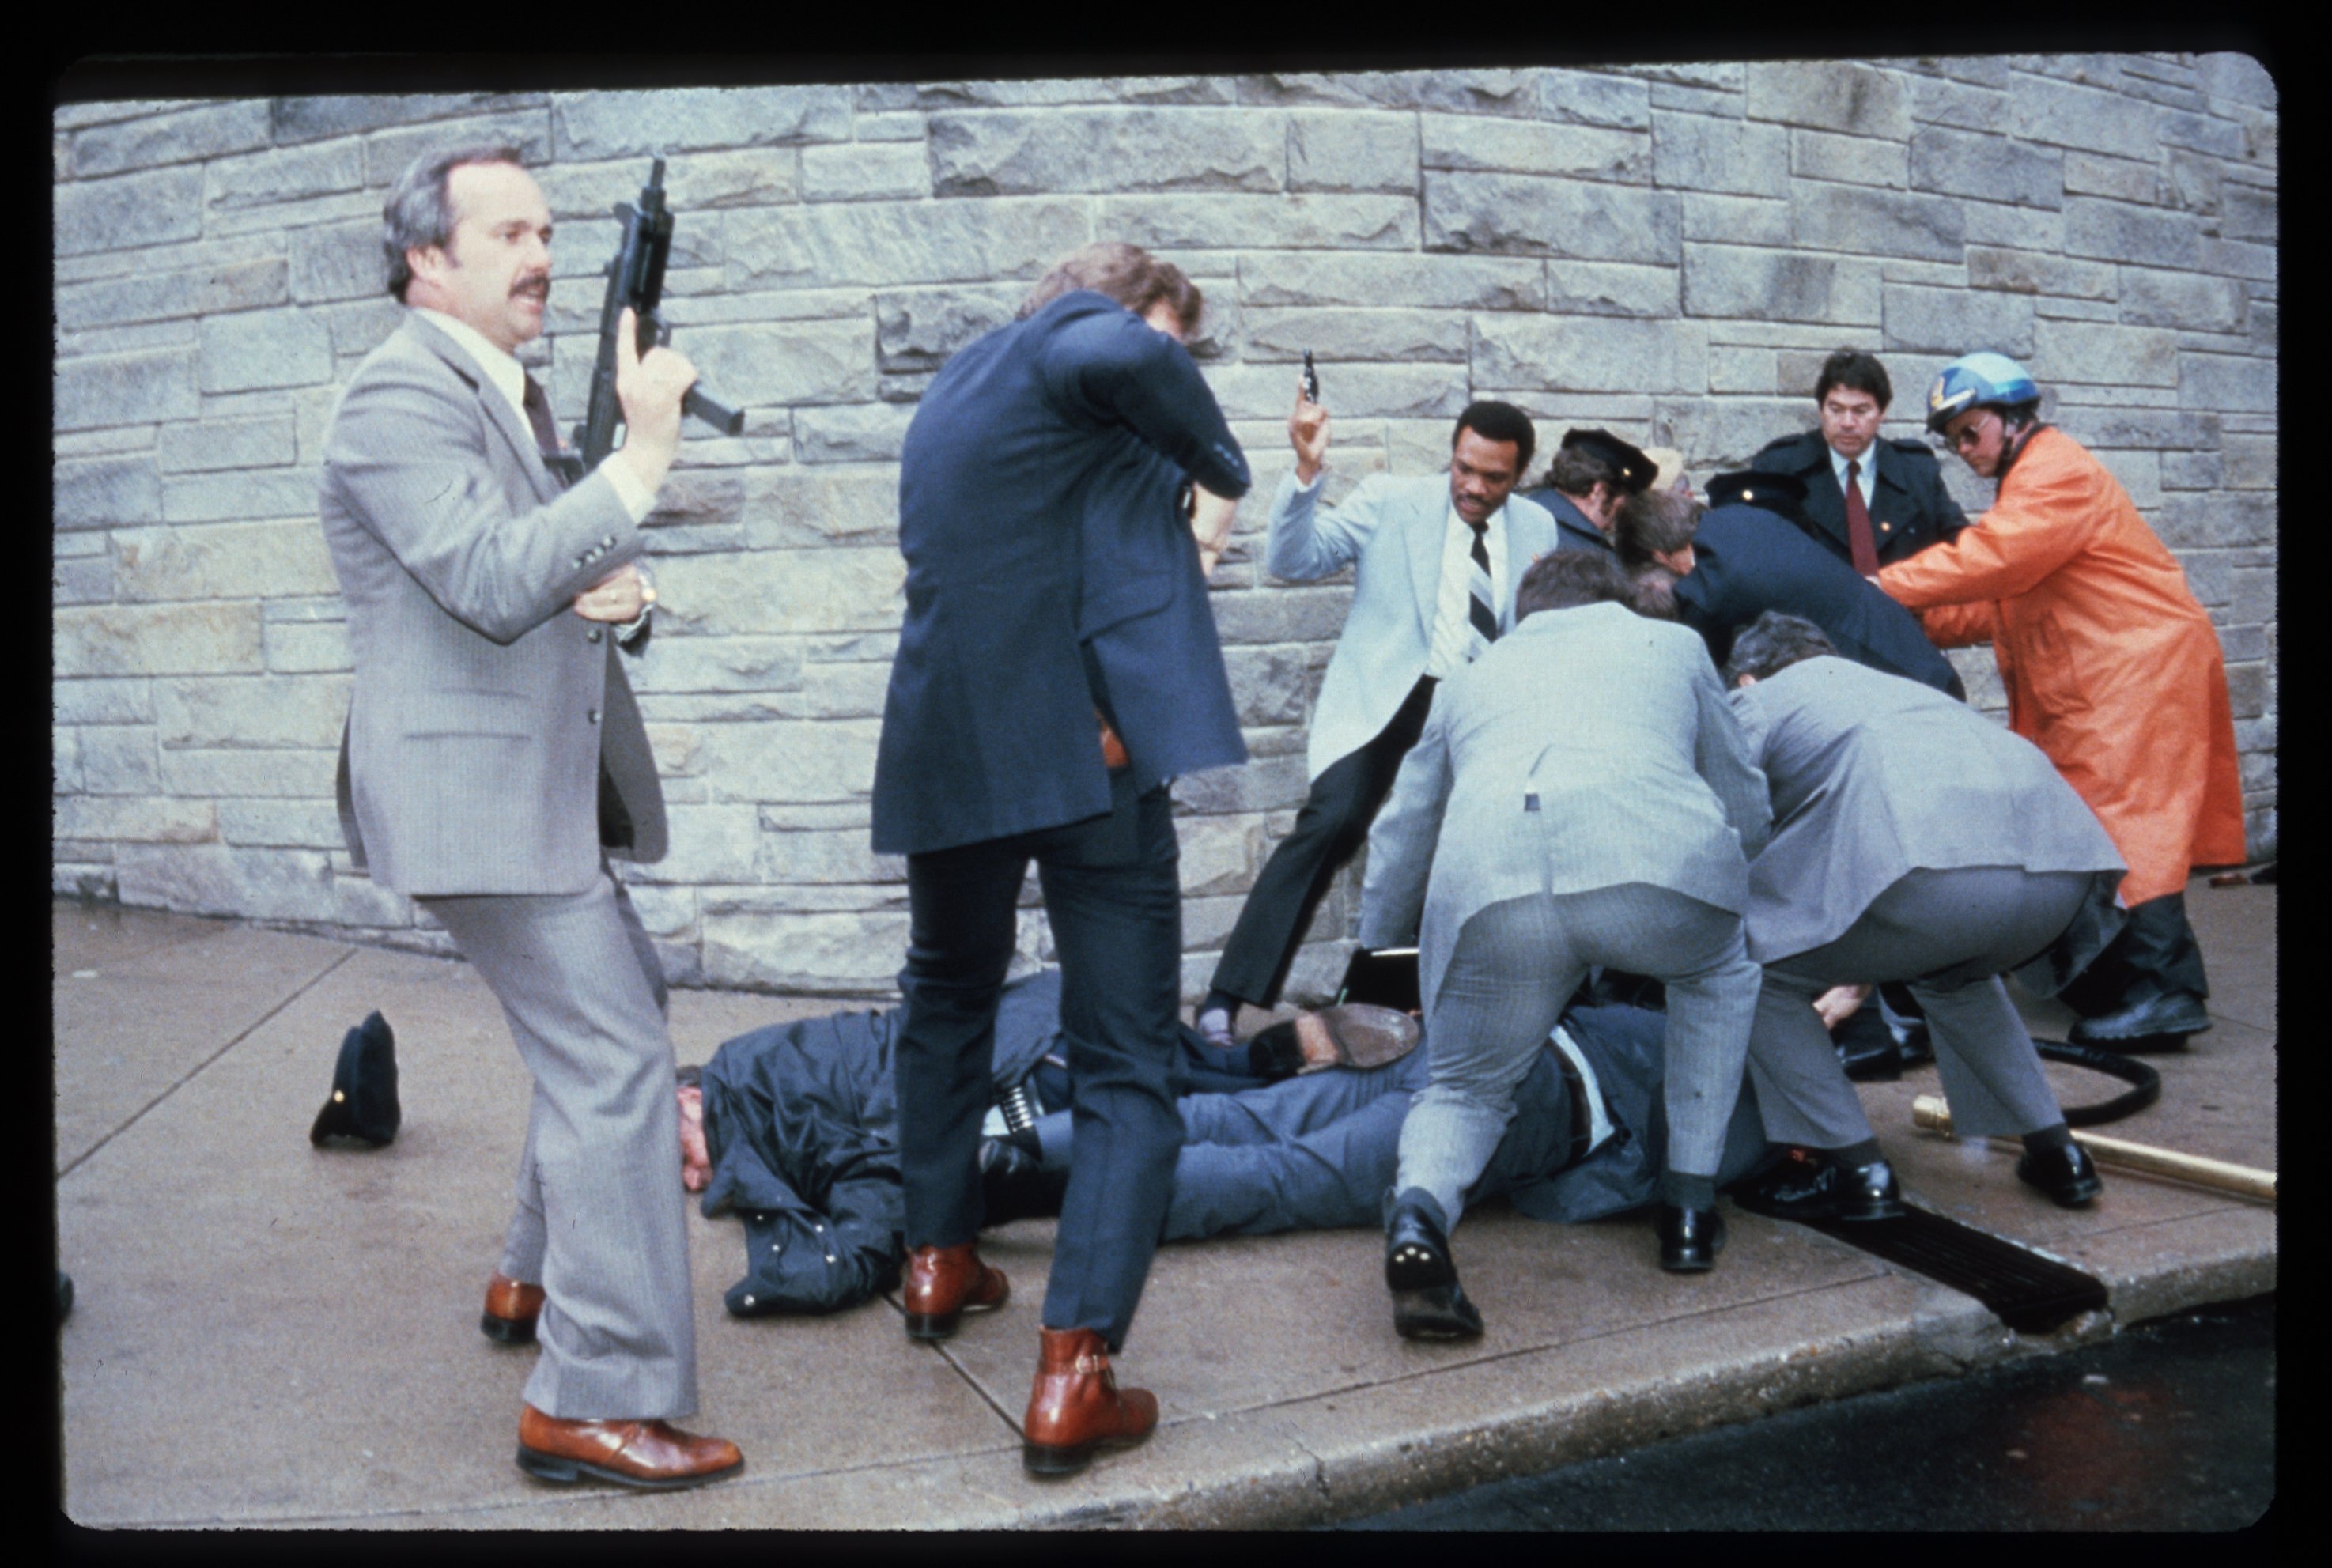 Нападение на политика. Рональд Рейган покушение. Покушение на Рональда Рейгана 1981. Джон Хинкли покушение на Рейгана.